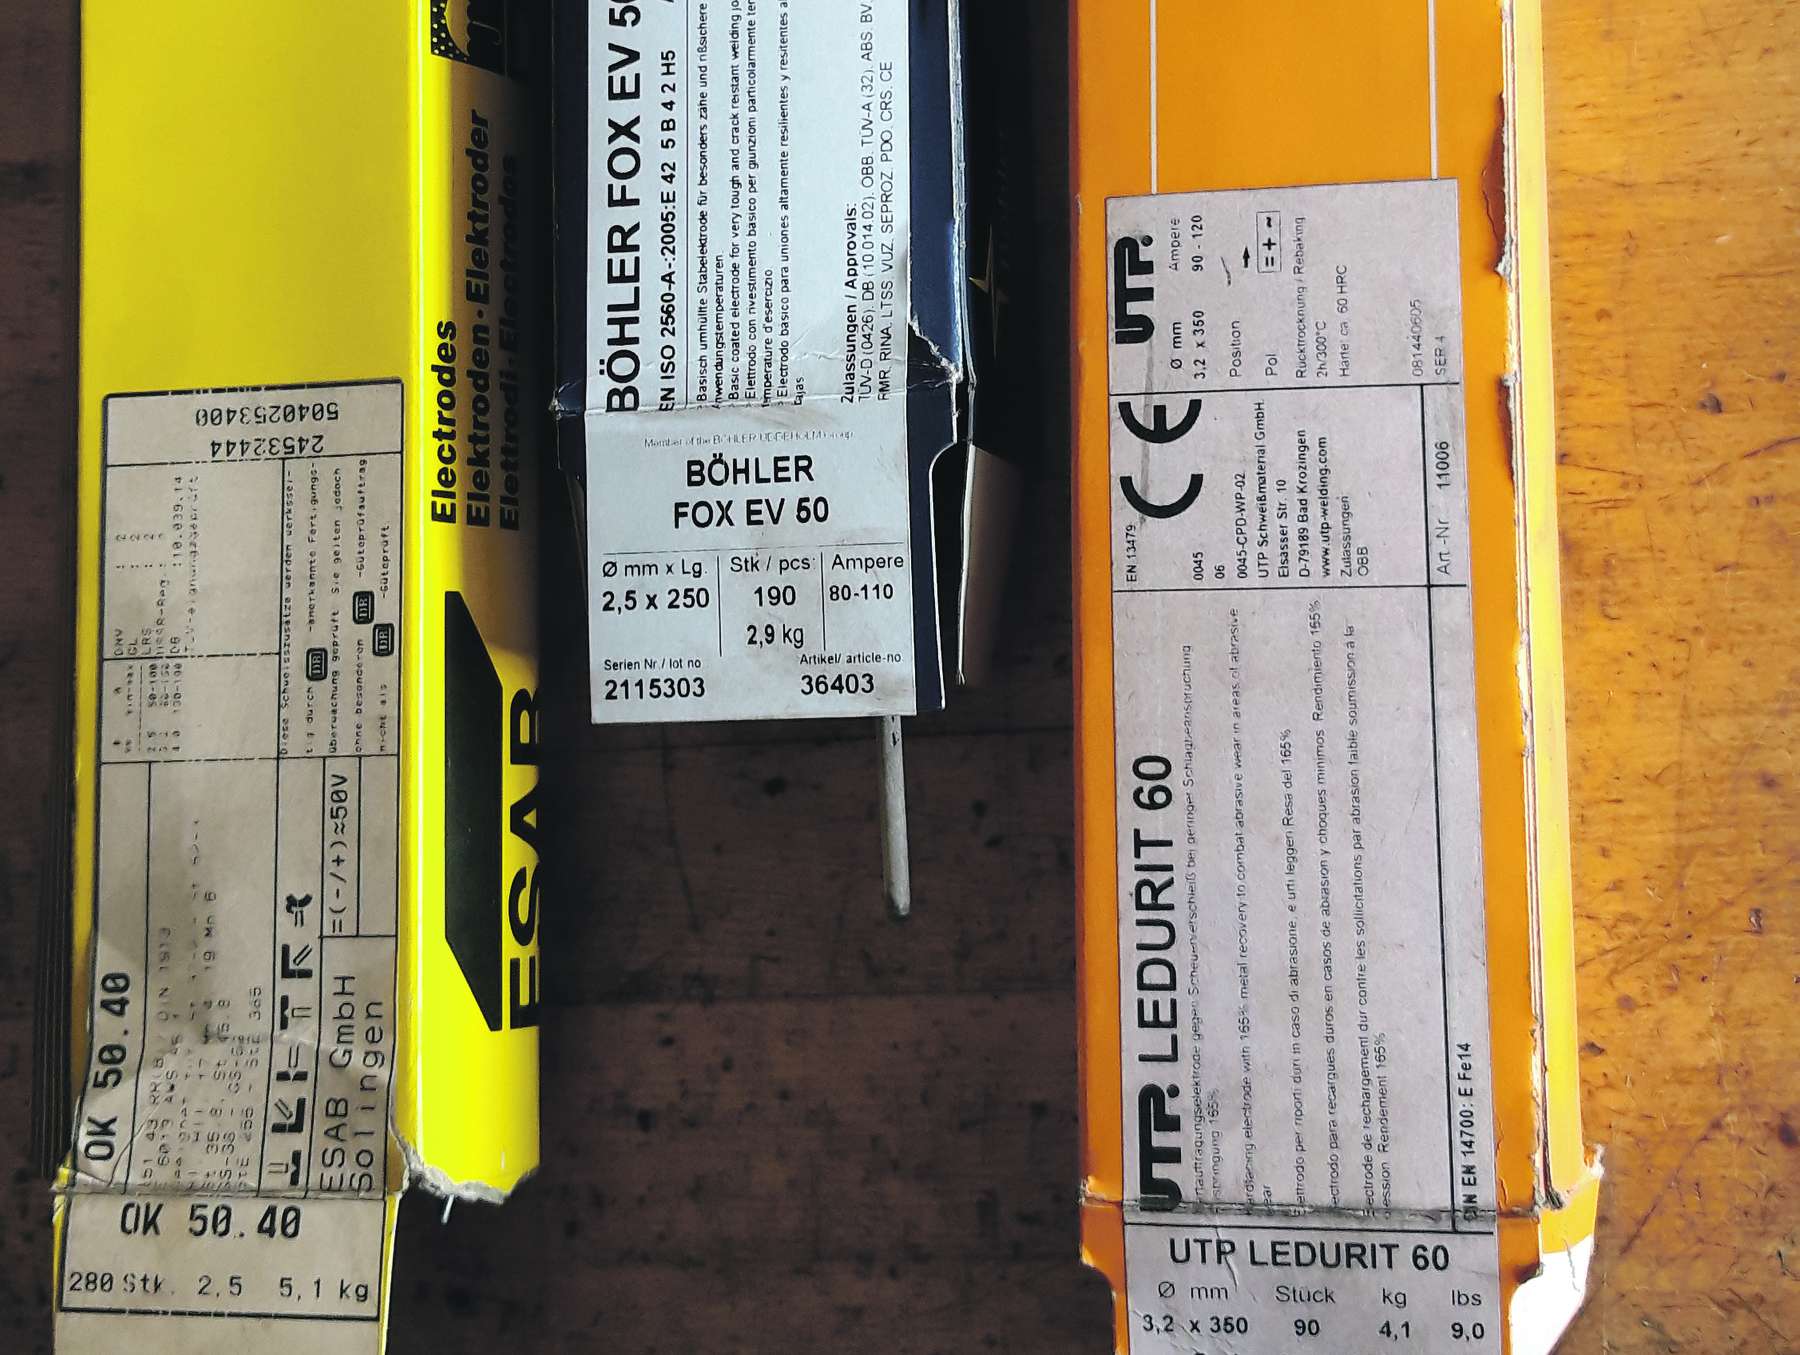 Auf der Etikette der Elektrodenpackung sind wertvolle Hinweise direkt oder indirekt über Kennzahlen und Kennbuchstaben angegeben. © LK NÖ/Reinhard Hörmansdorfer